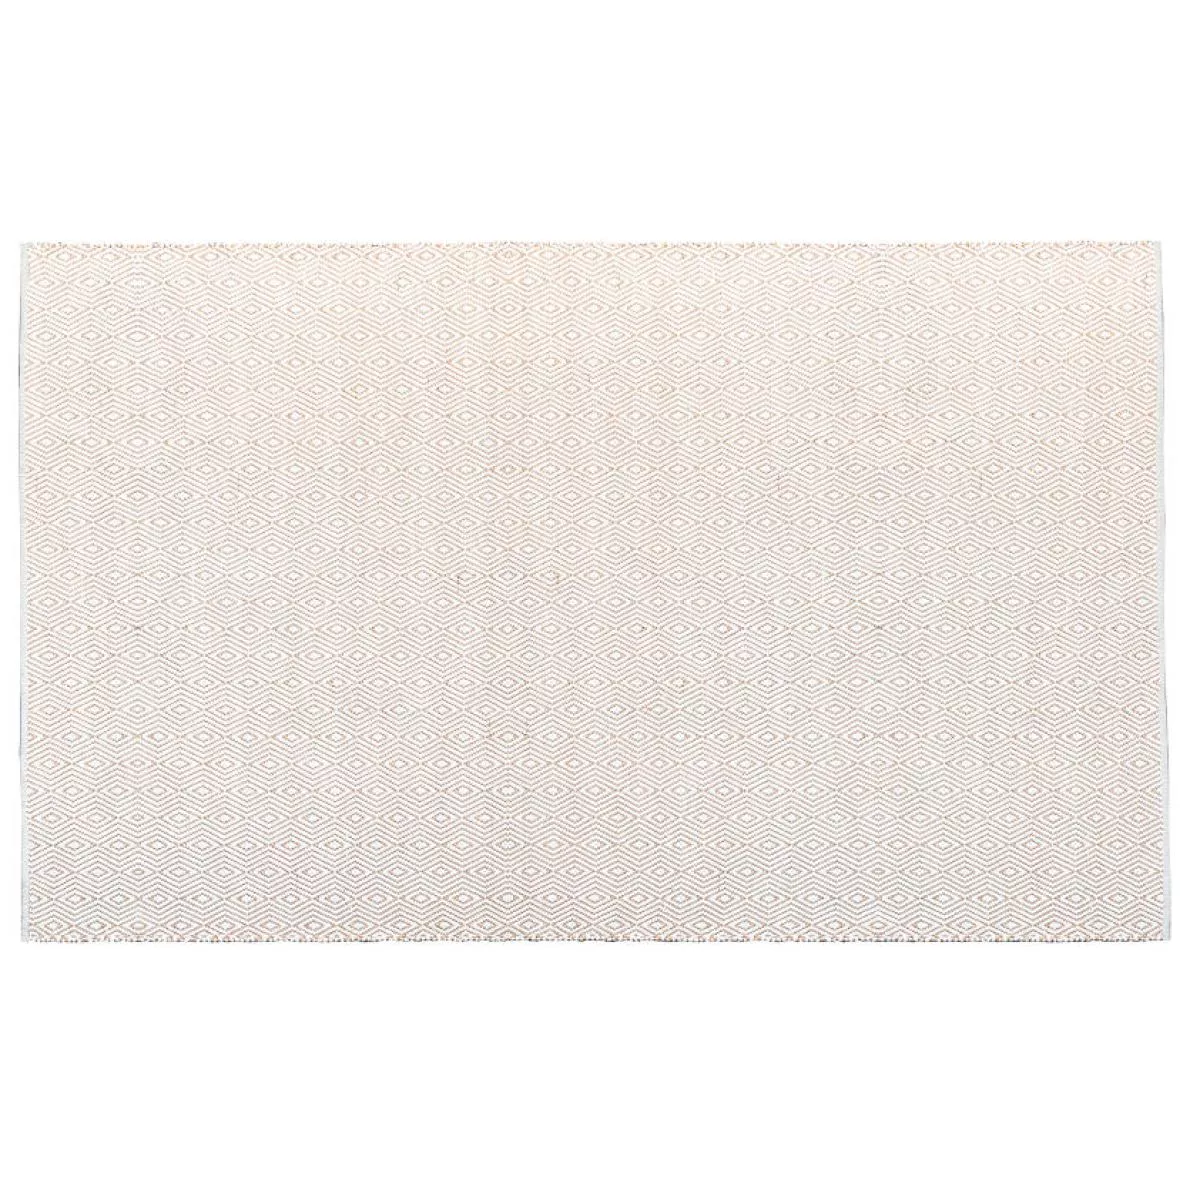 Die weiße Ausführung: Handgewebter Teppich "Argola Liso" aus Wolle und Kork